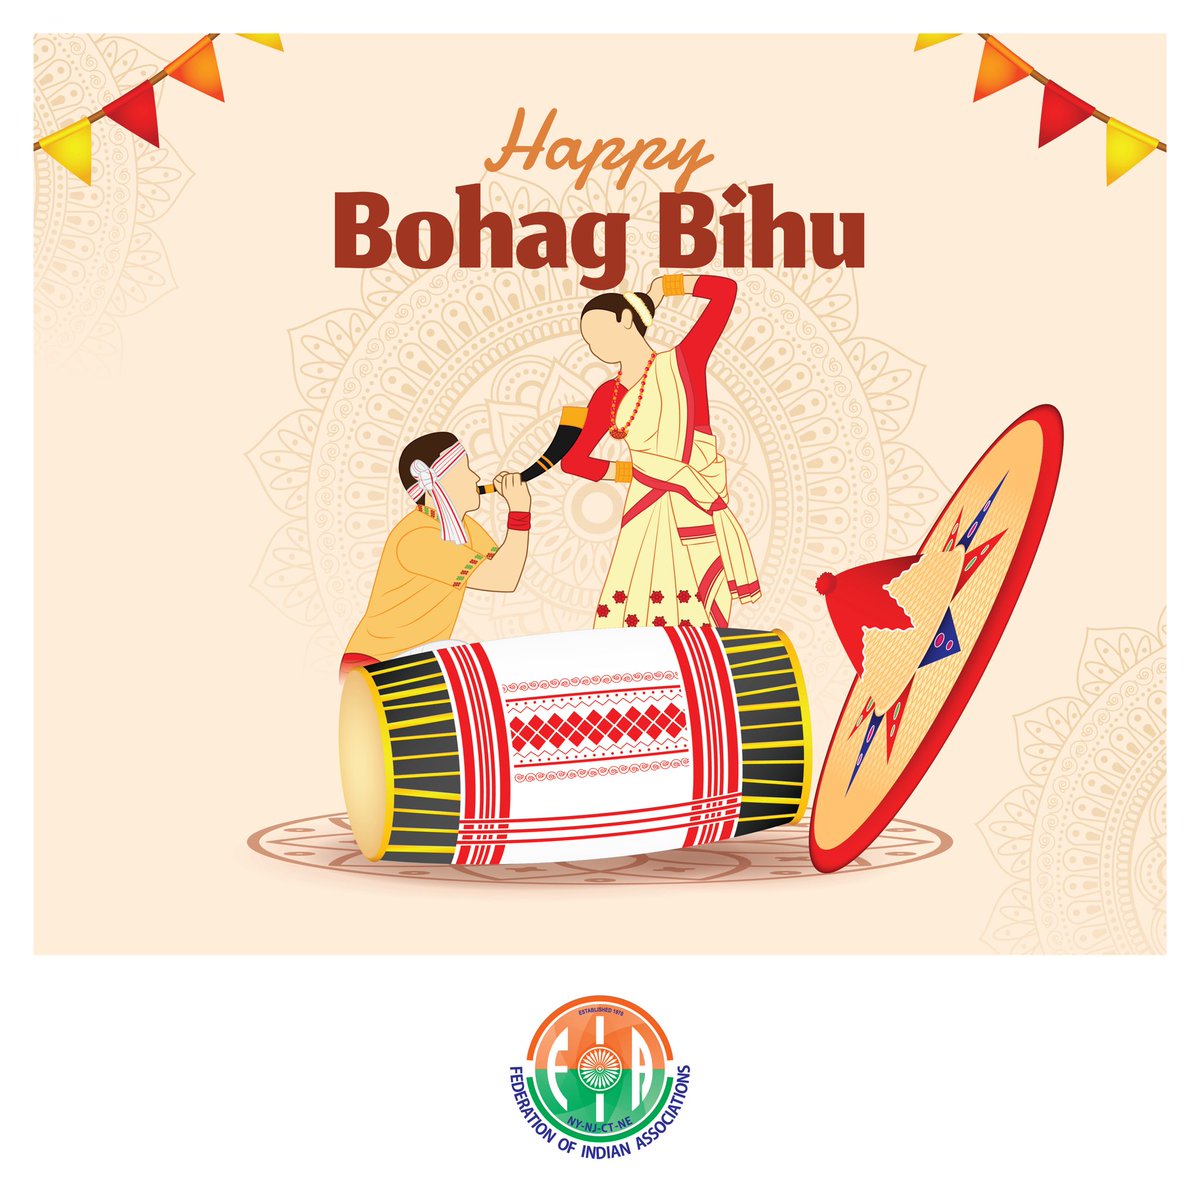 Sending love and warm wishes on the occasion of Bohag Bihu. Happy Bohag Bihu 🙏🏻🎷🪘 #bohagbihu #rangolibihu #asamfestival #indianfestival #vasudhaivakutumbakam